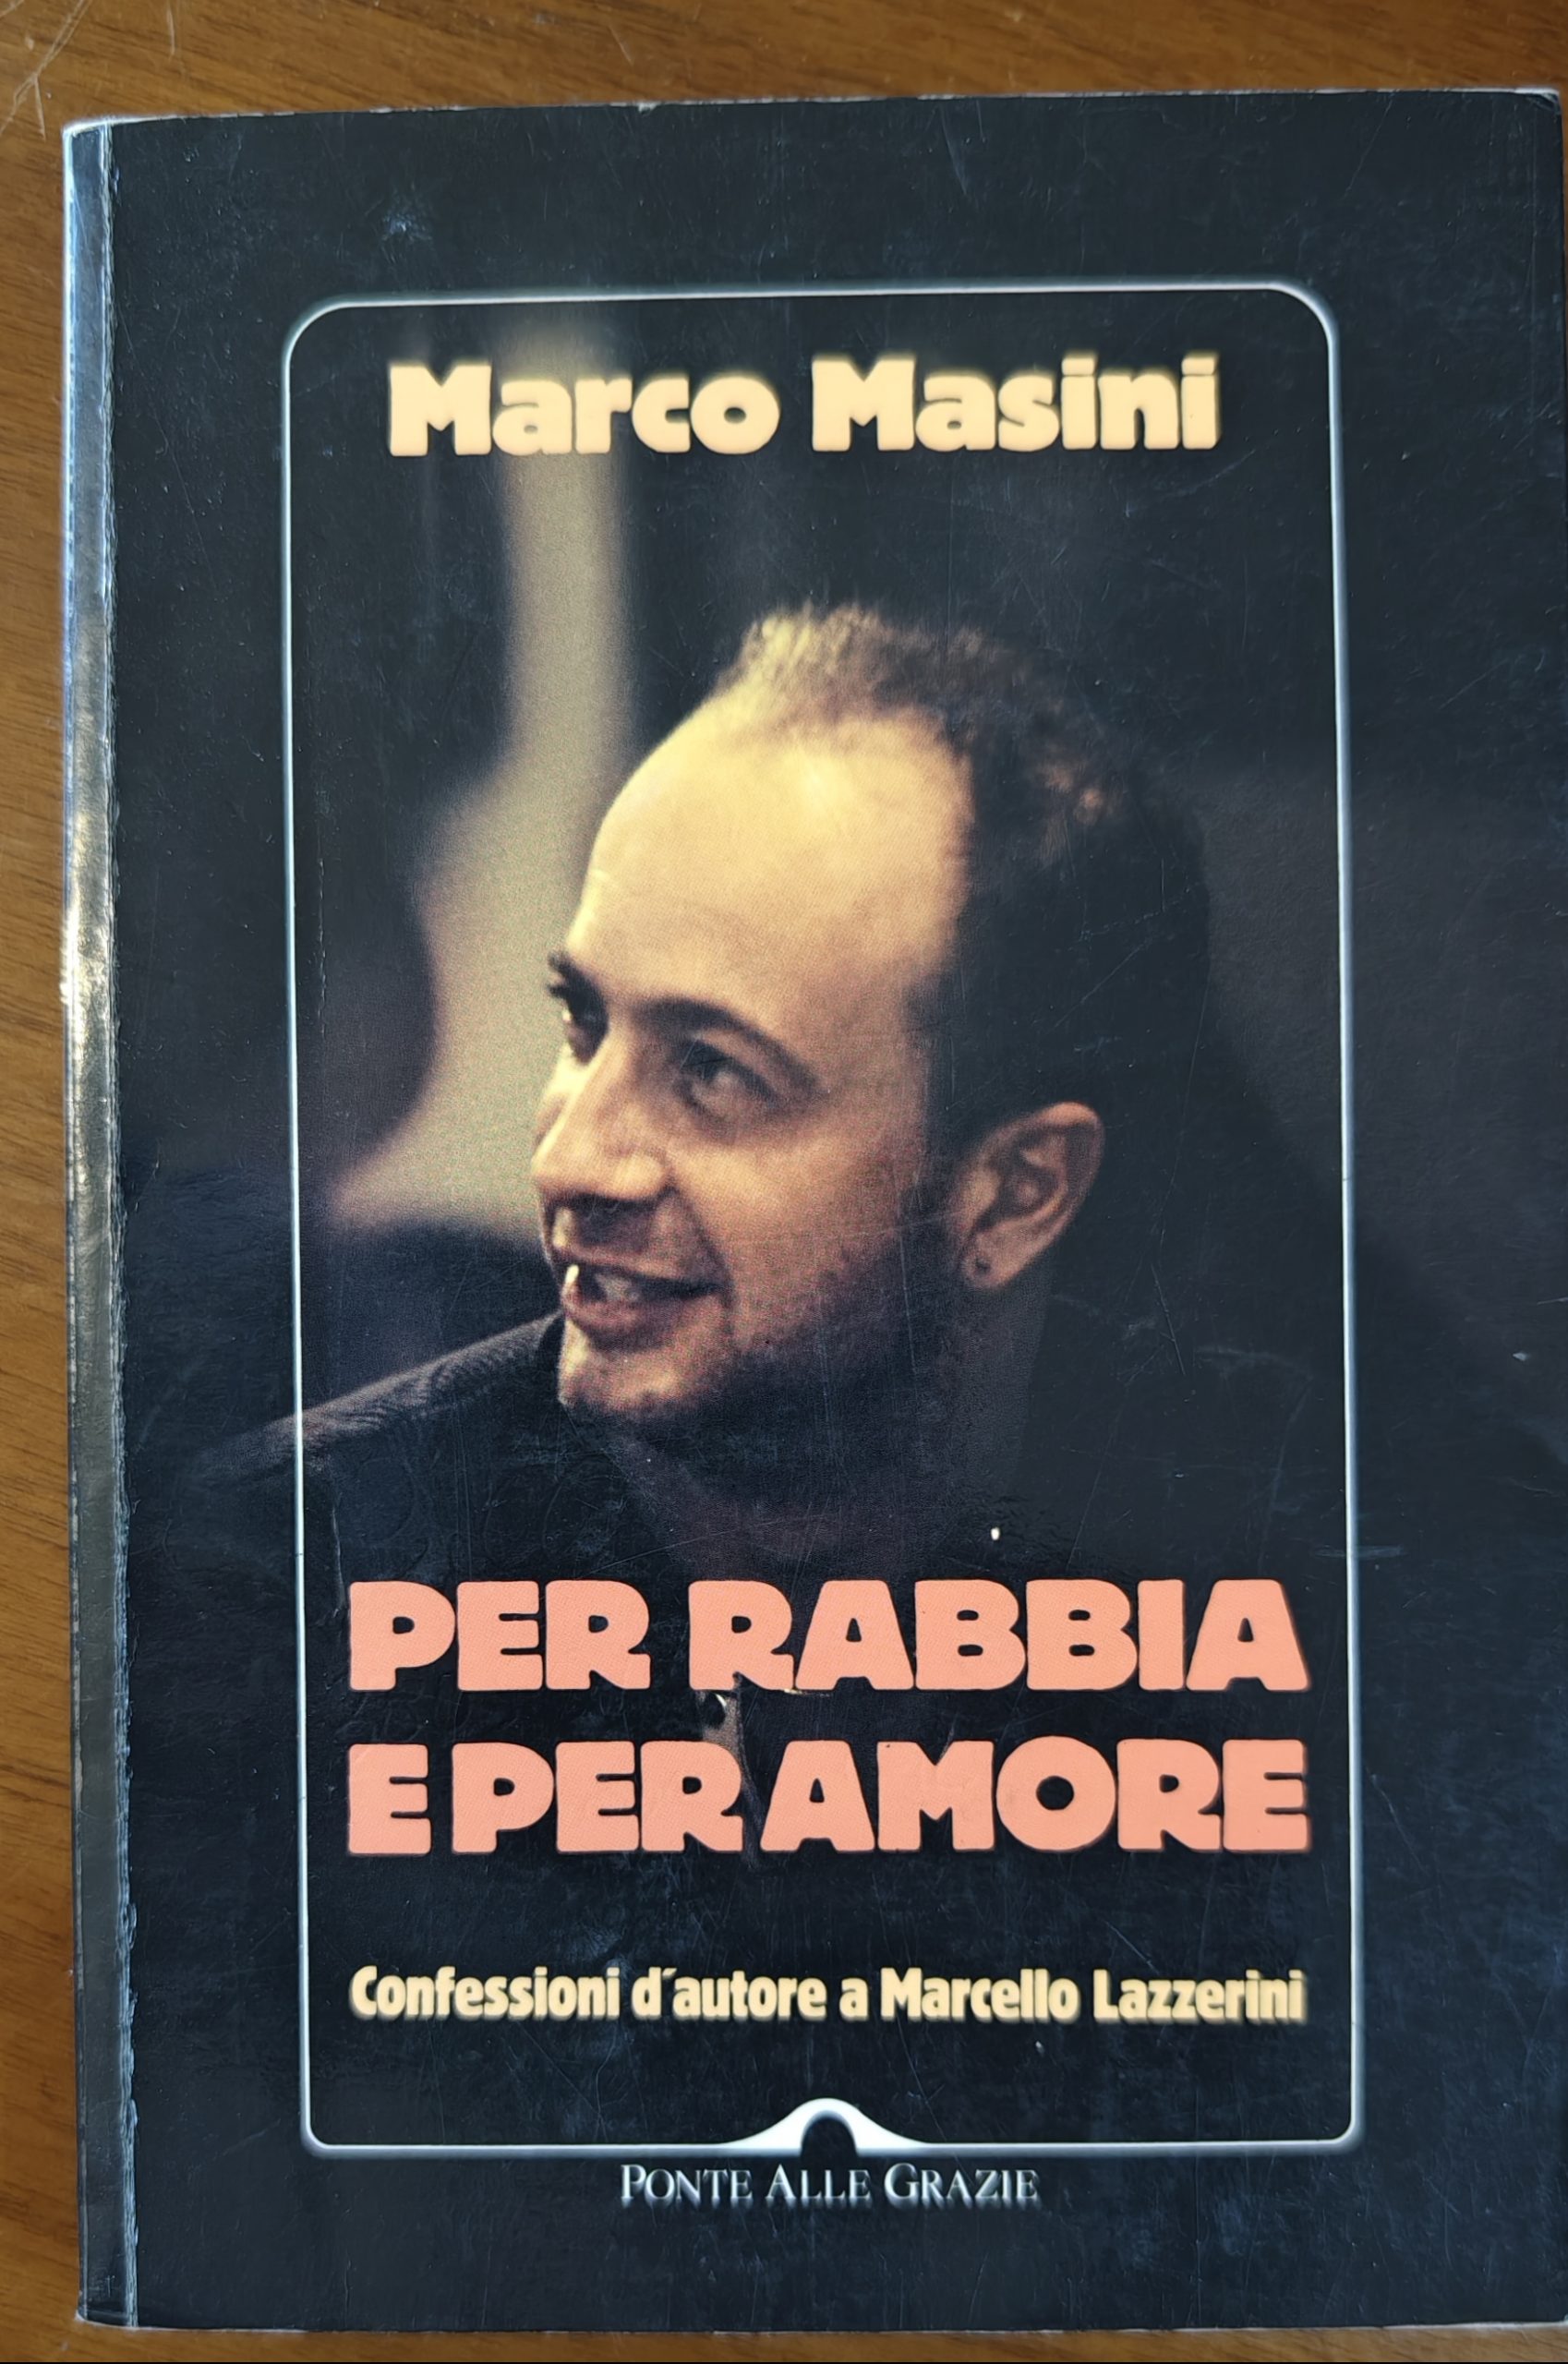 In cerca di “Per rabbia e per amore”: le confessioni di Marco Masini (Ponte alle grazie, 1995)